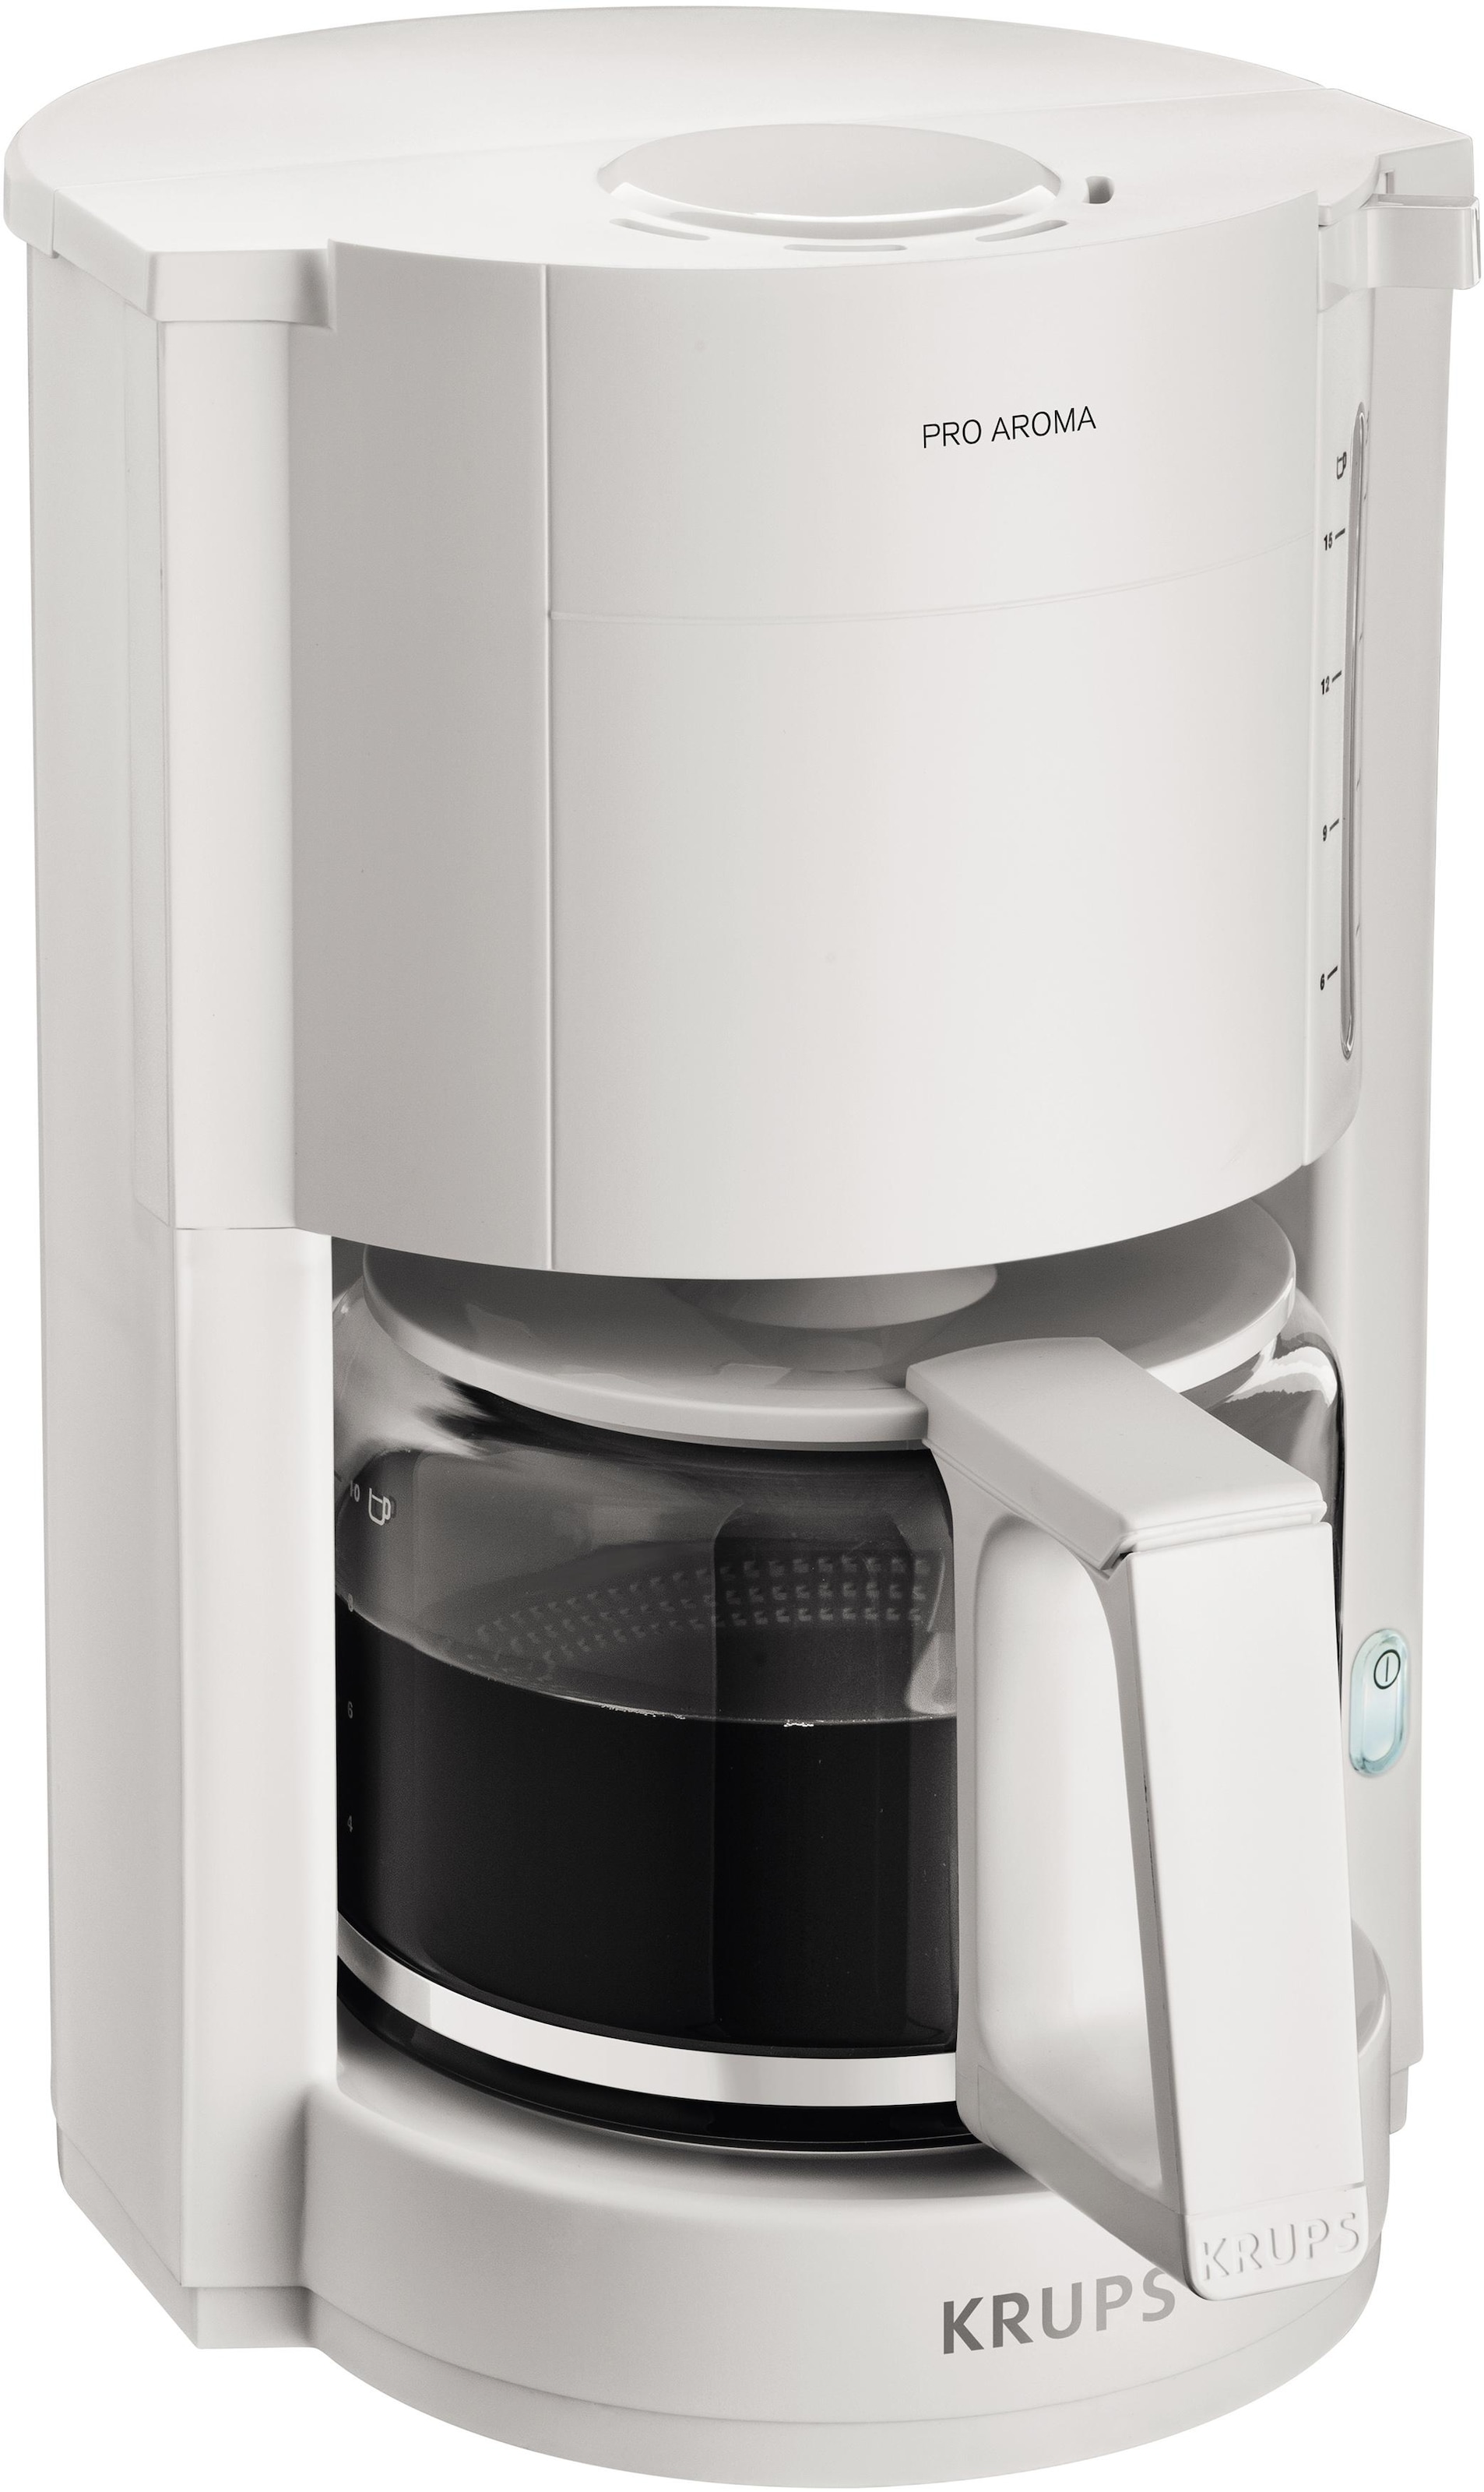 Krups Filterkaffeemaschine W »F30901 Pro jetzt Aroma«, Warmhaltefunktion, OTTO 1050 bei Automatische Abschaltung